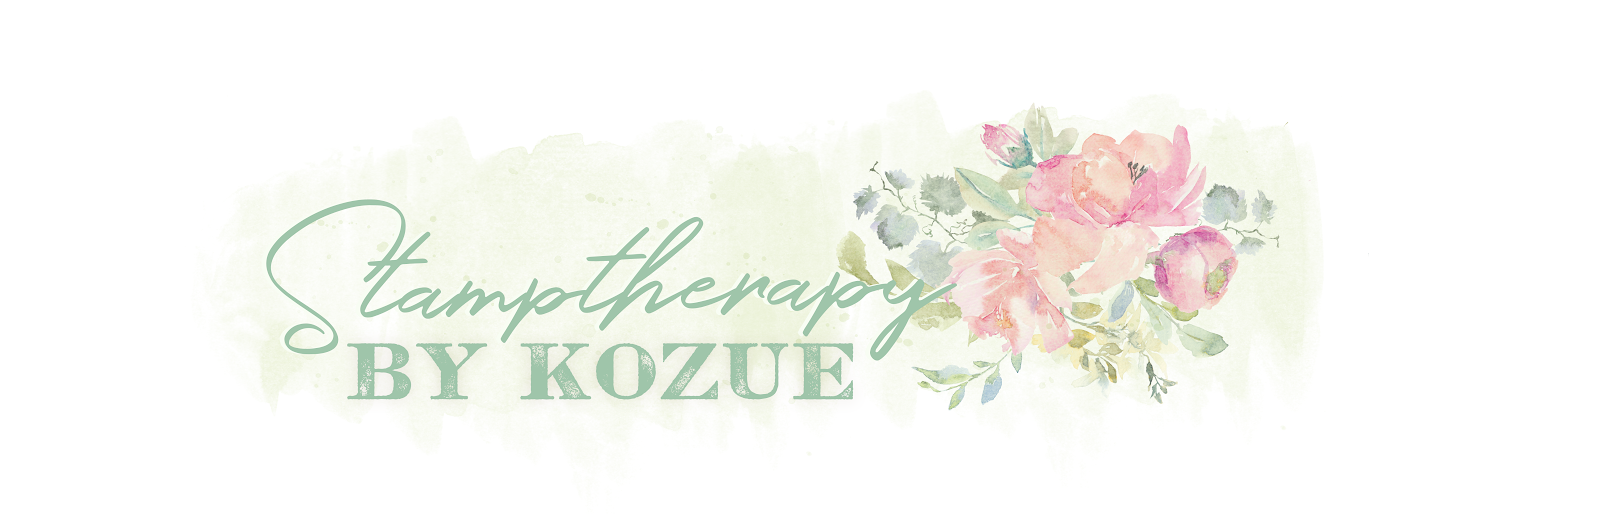 Stamptherapy by Kozue